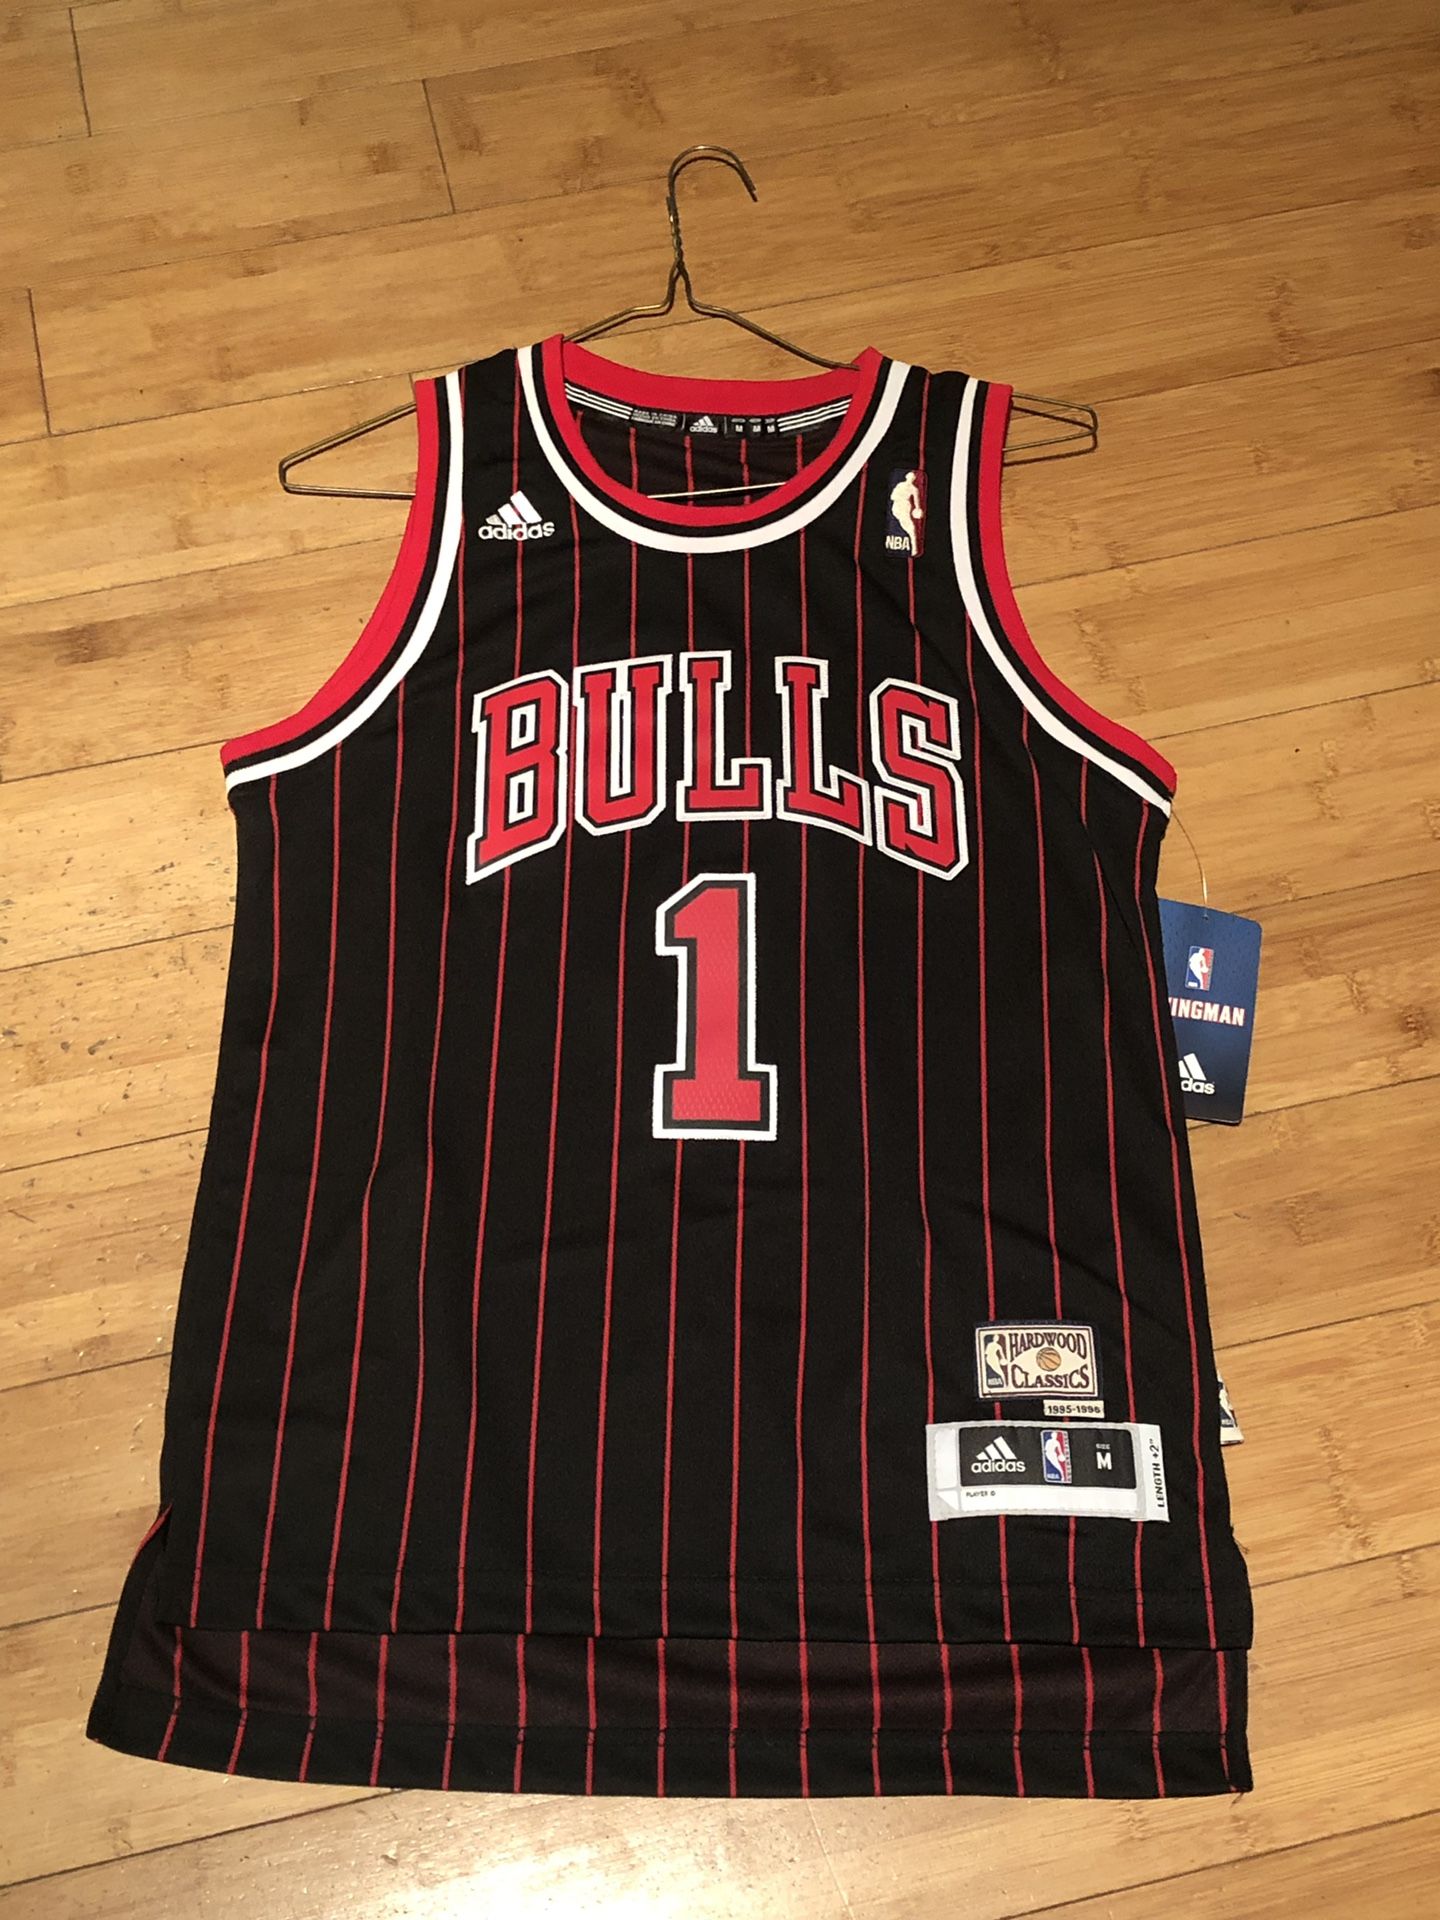 Adidas Chicago Bulls Derrick Rose 1 NBA Basketball Jersey / 